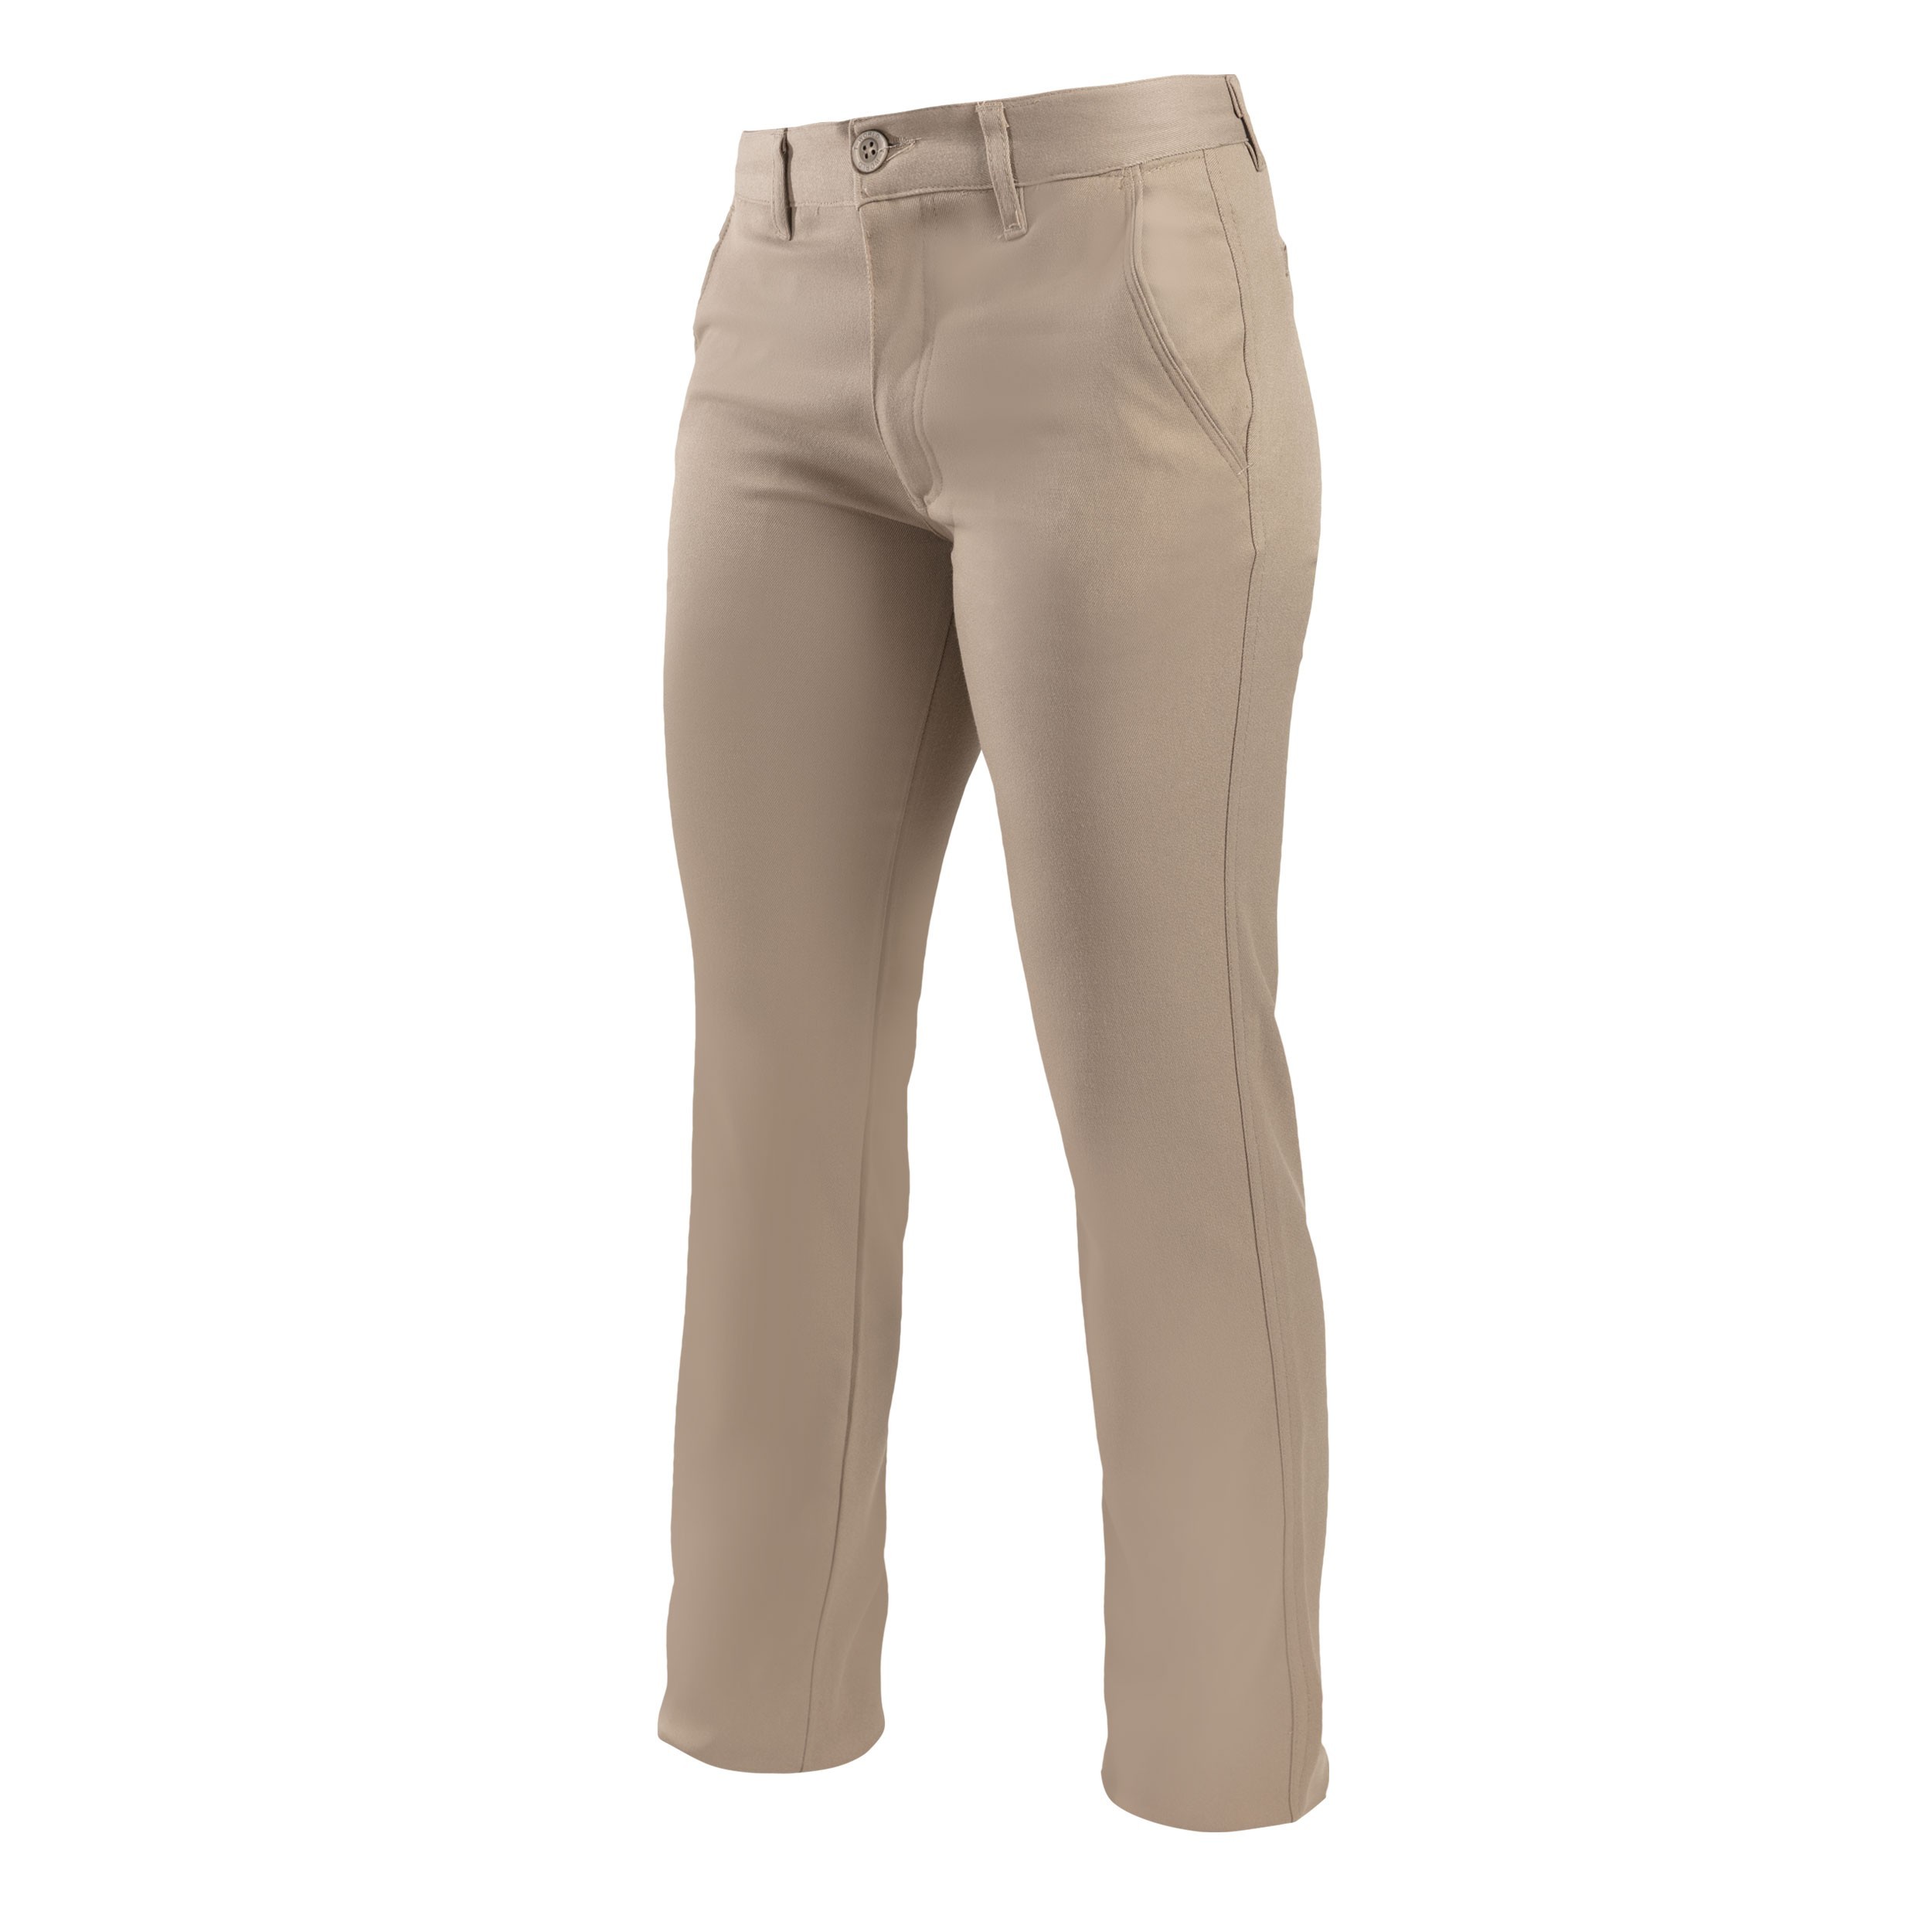 Pantalón Mujer Kimal  Triestel – venta de elementos de protección  personal, seguridad, ropa técnica y corporativa